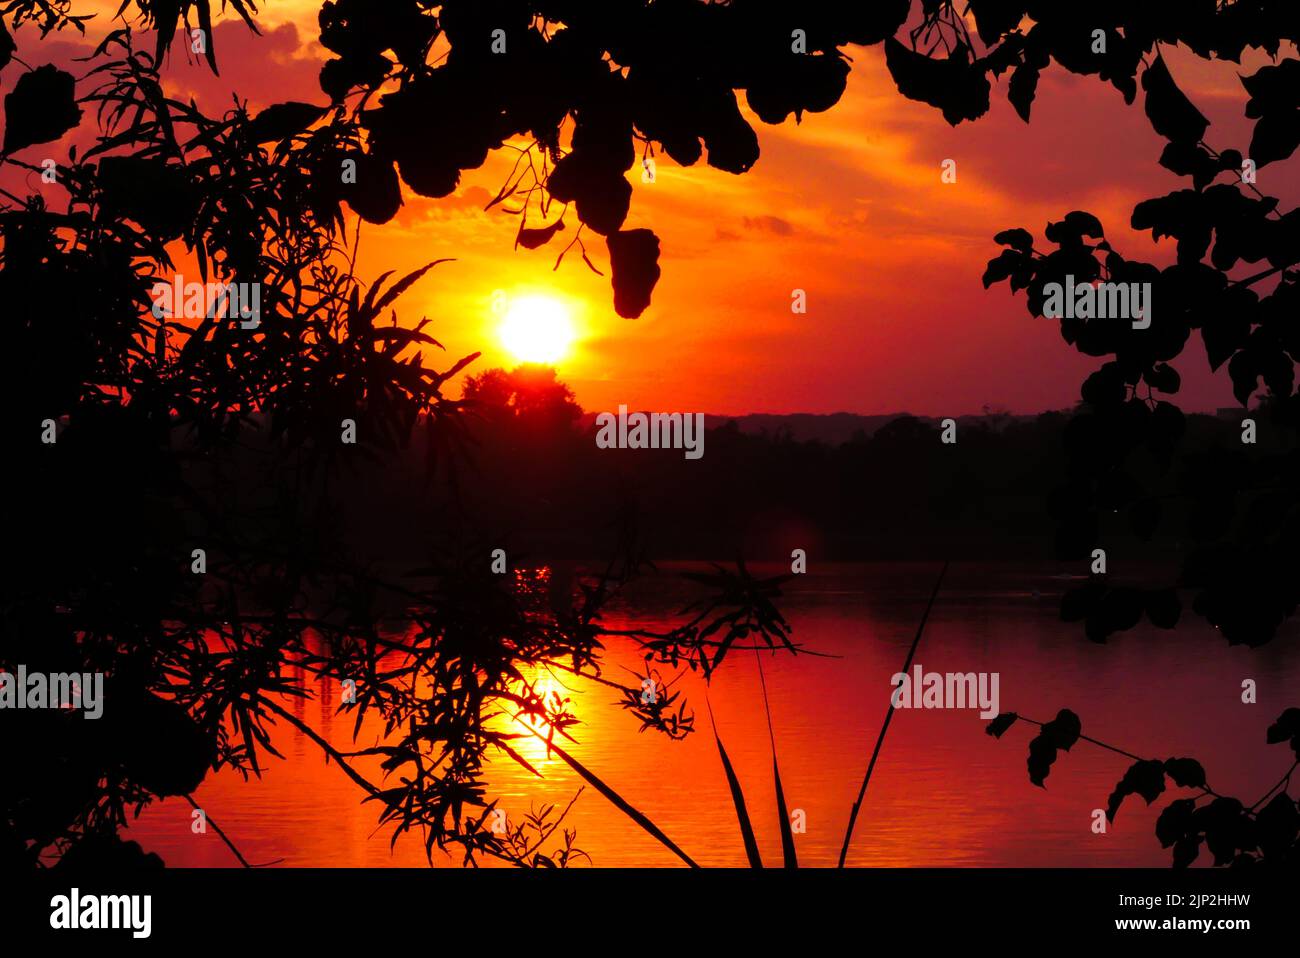 Incredibile alba o tramonto nella scena rurale. Luce del sole sull'acqua di un lago. Cielo suggestivo con silhouette di vegetazione in primo piano. Foto Stock